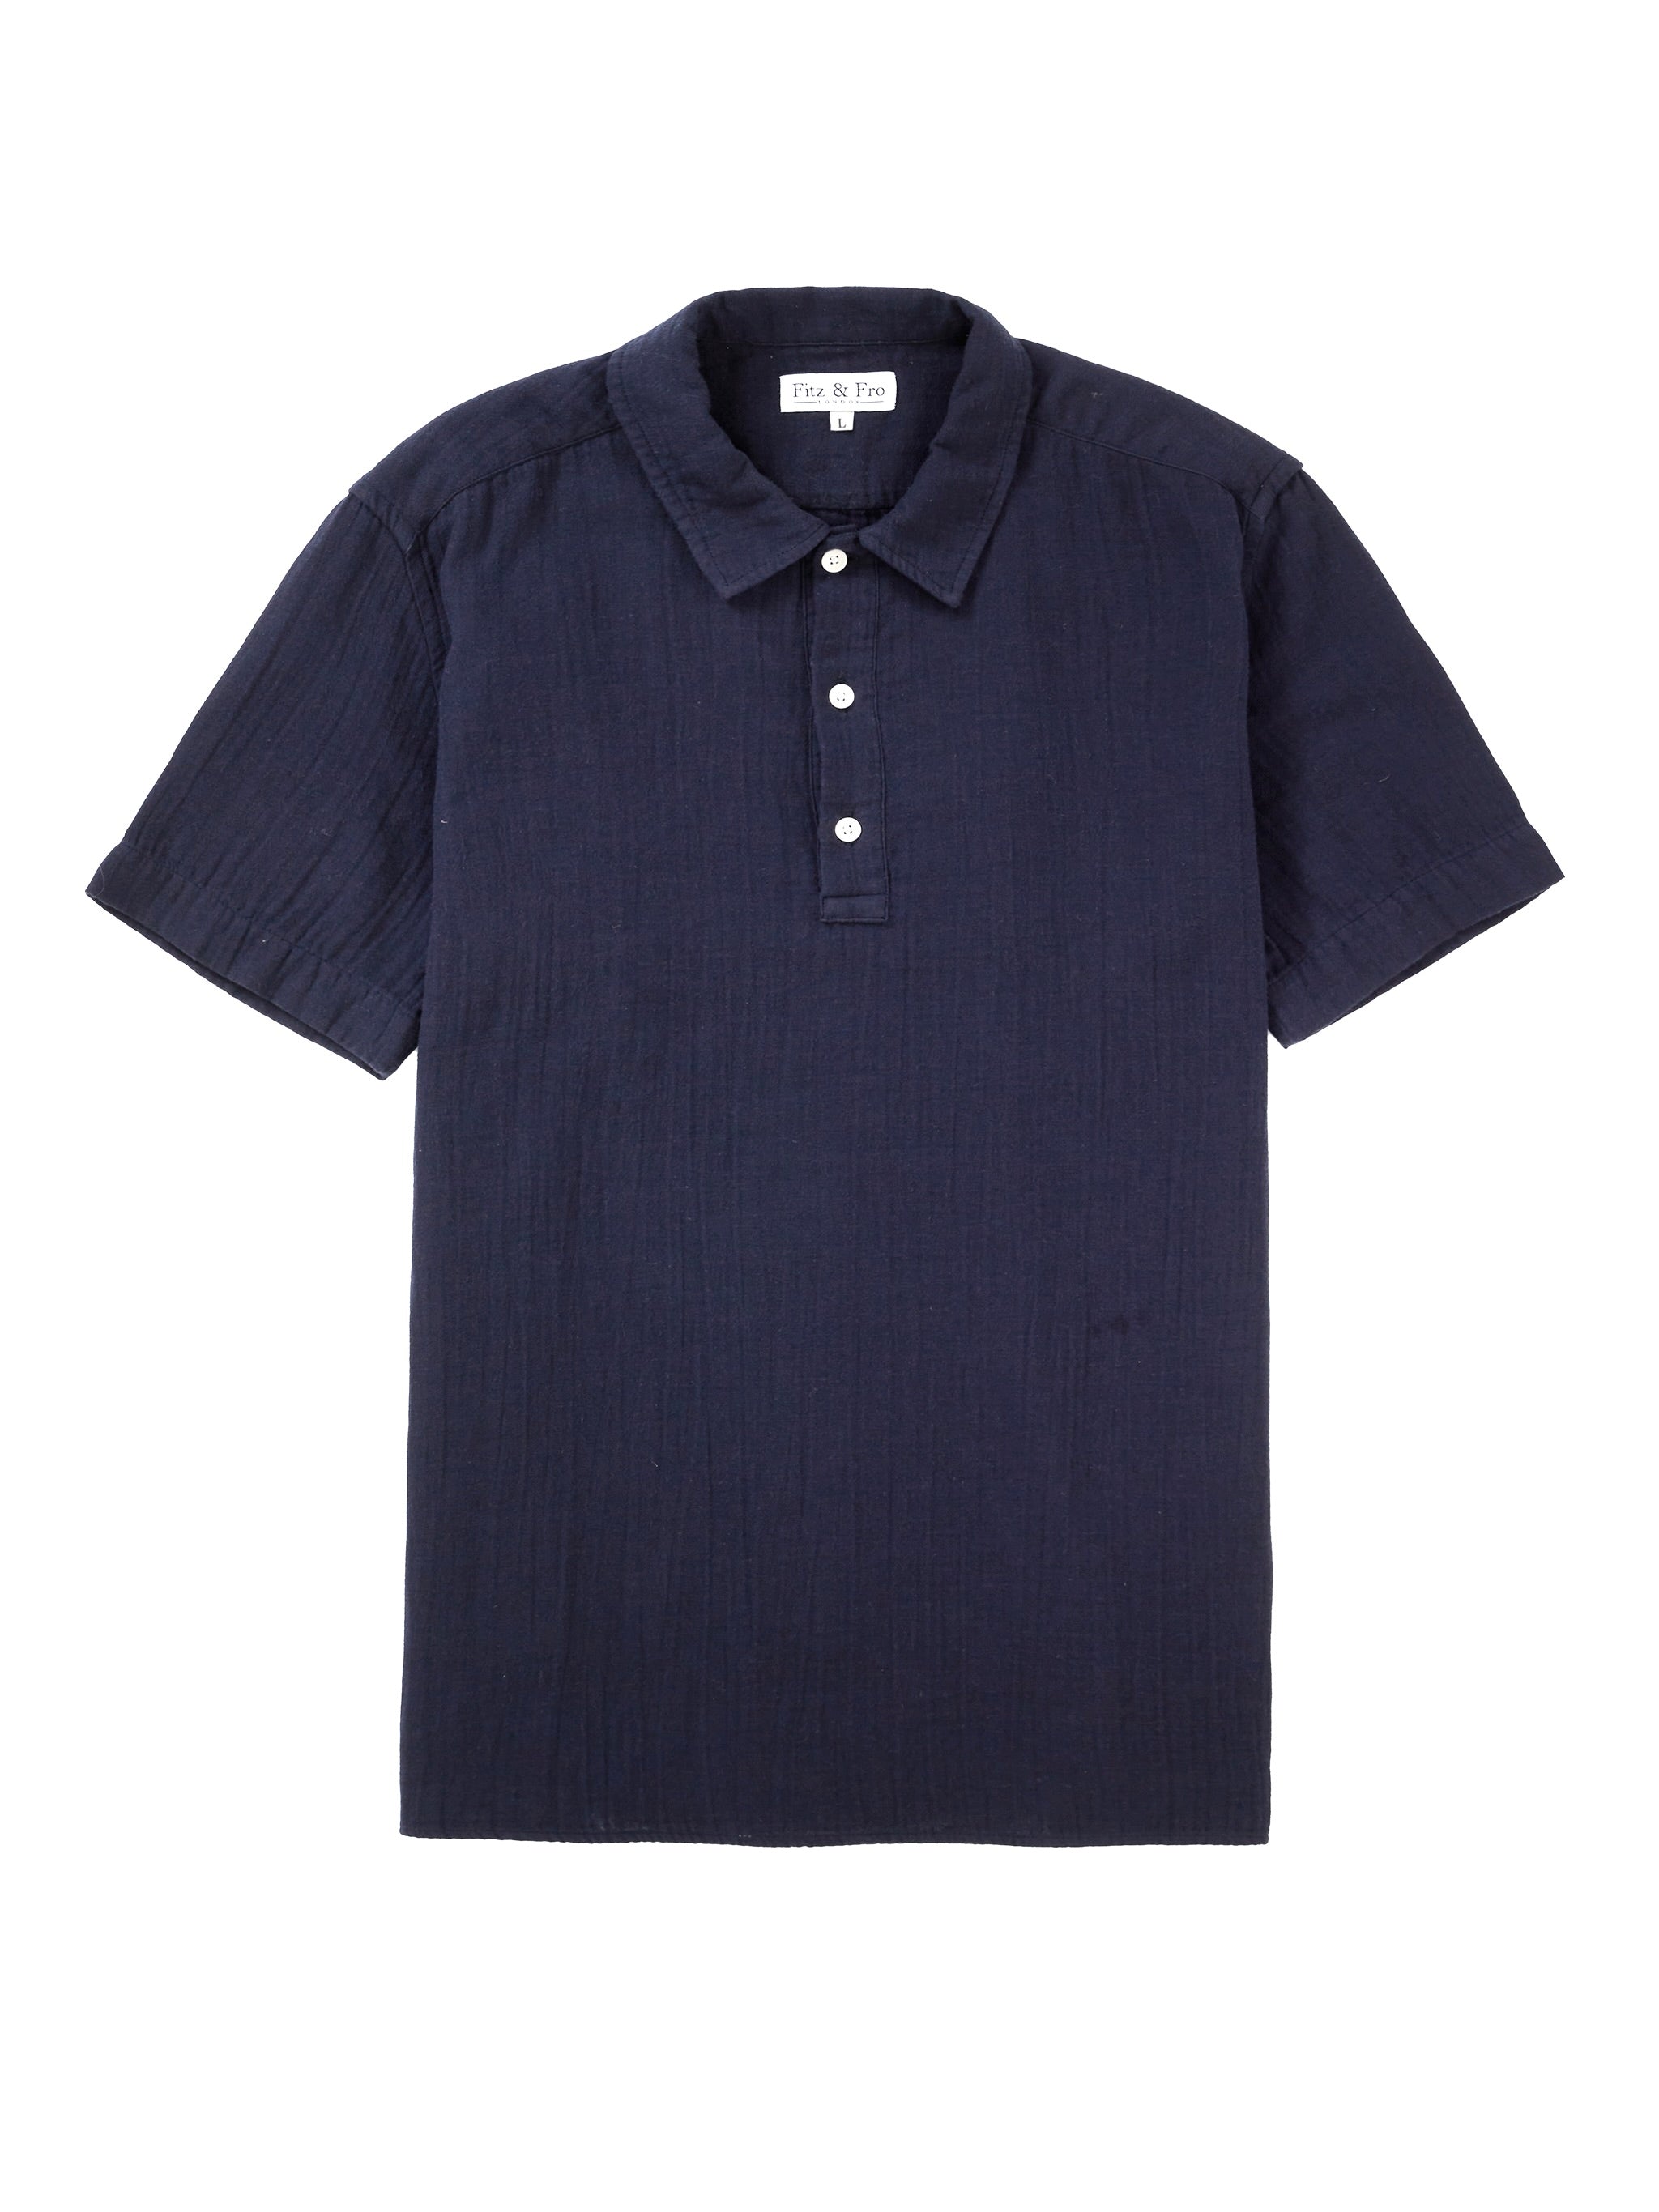 Cotton Polo Shirt - Navy Blue